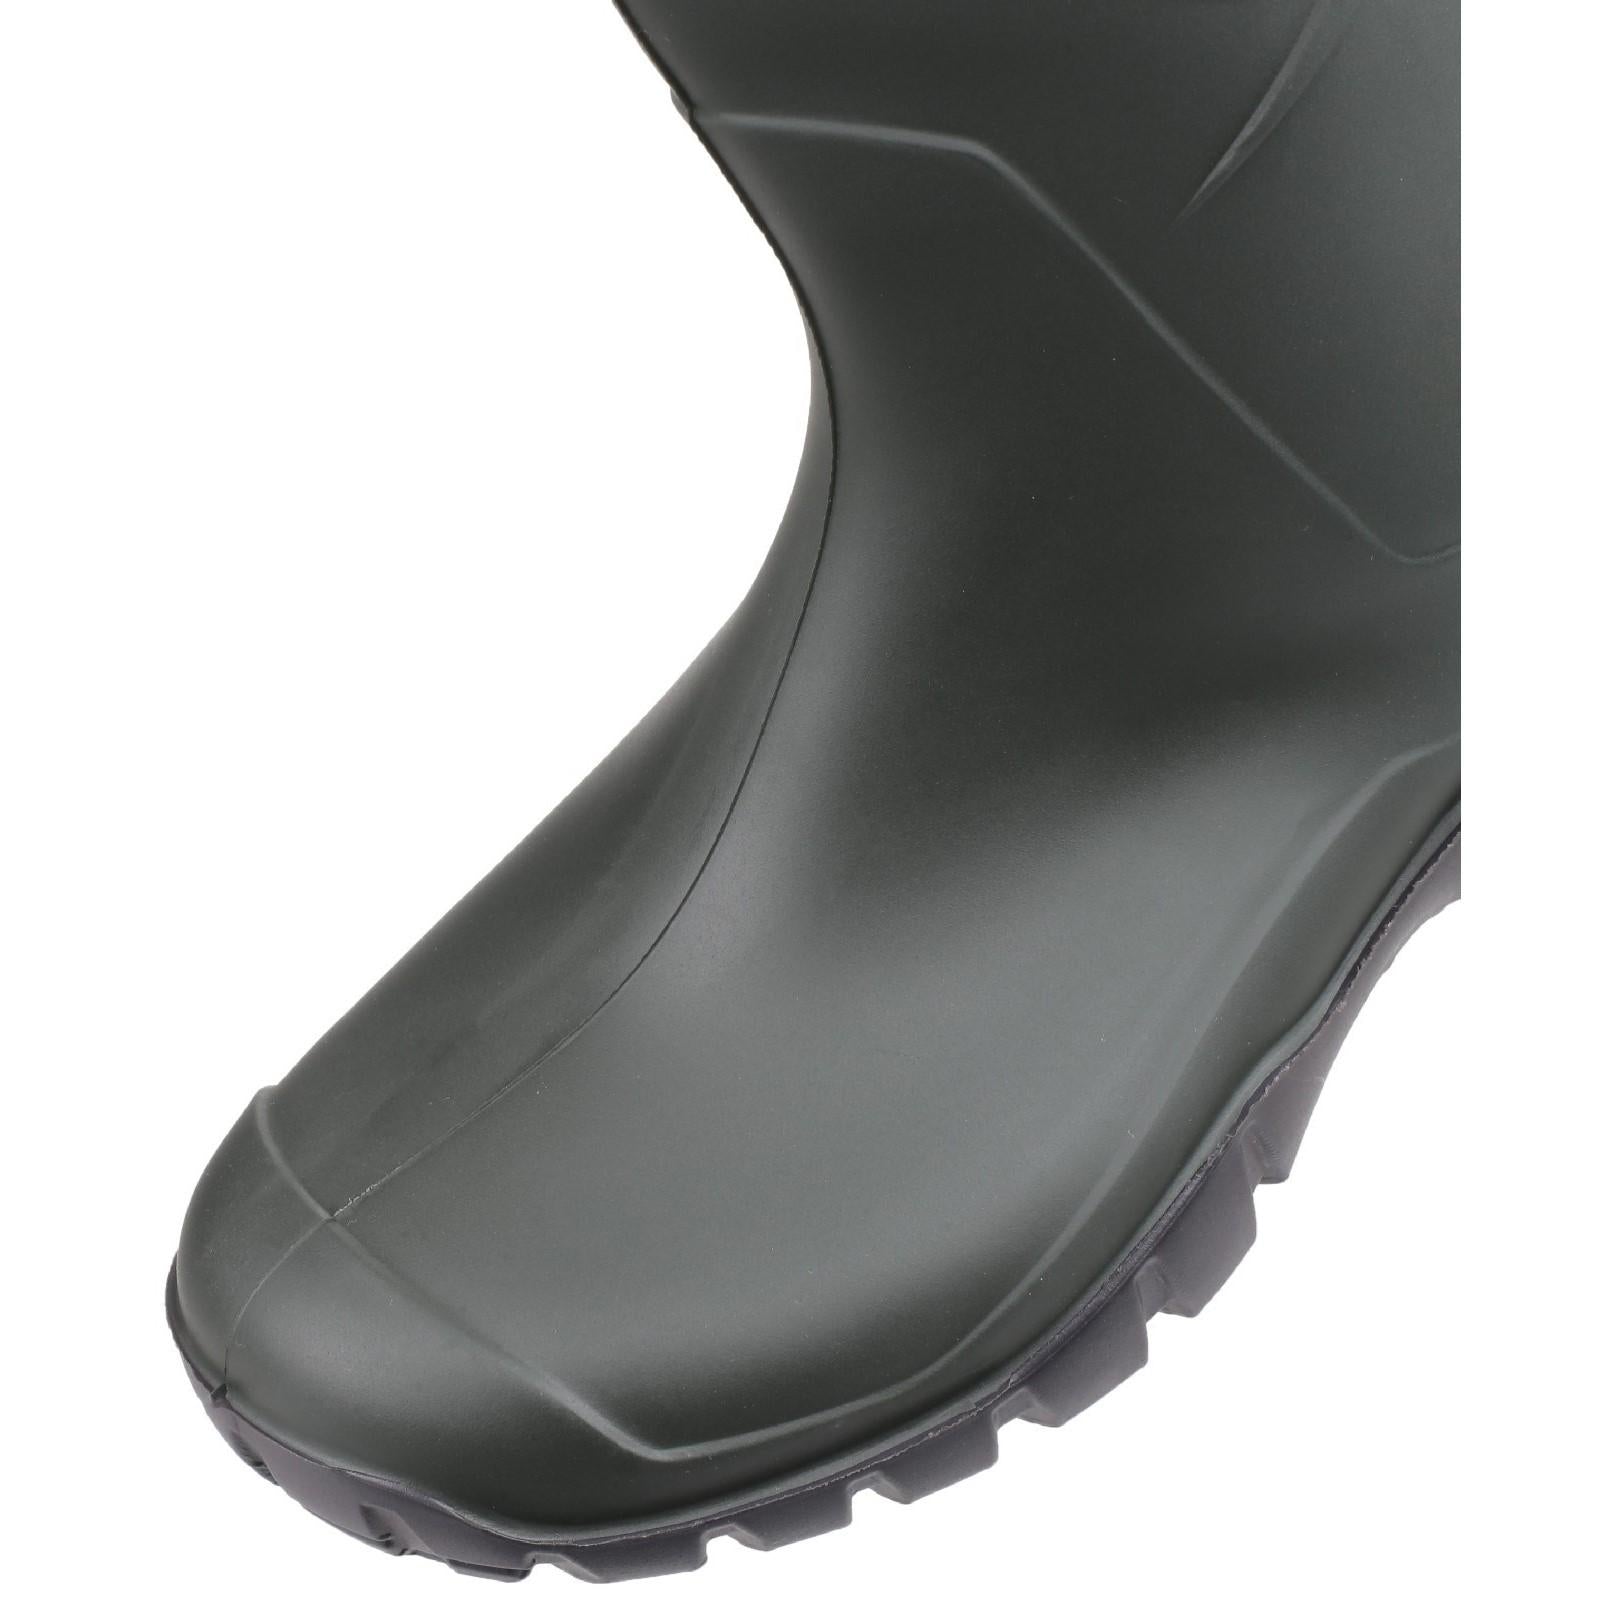 Dunlop Dee Calf Length Wellington Boots